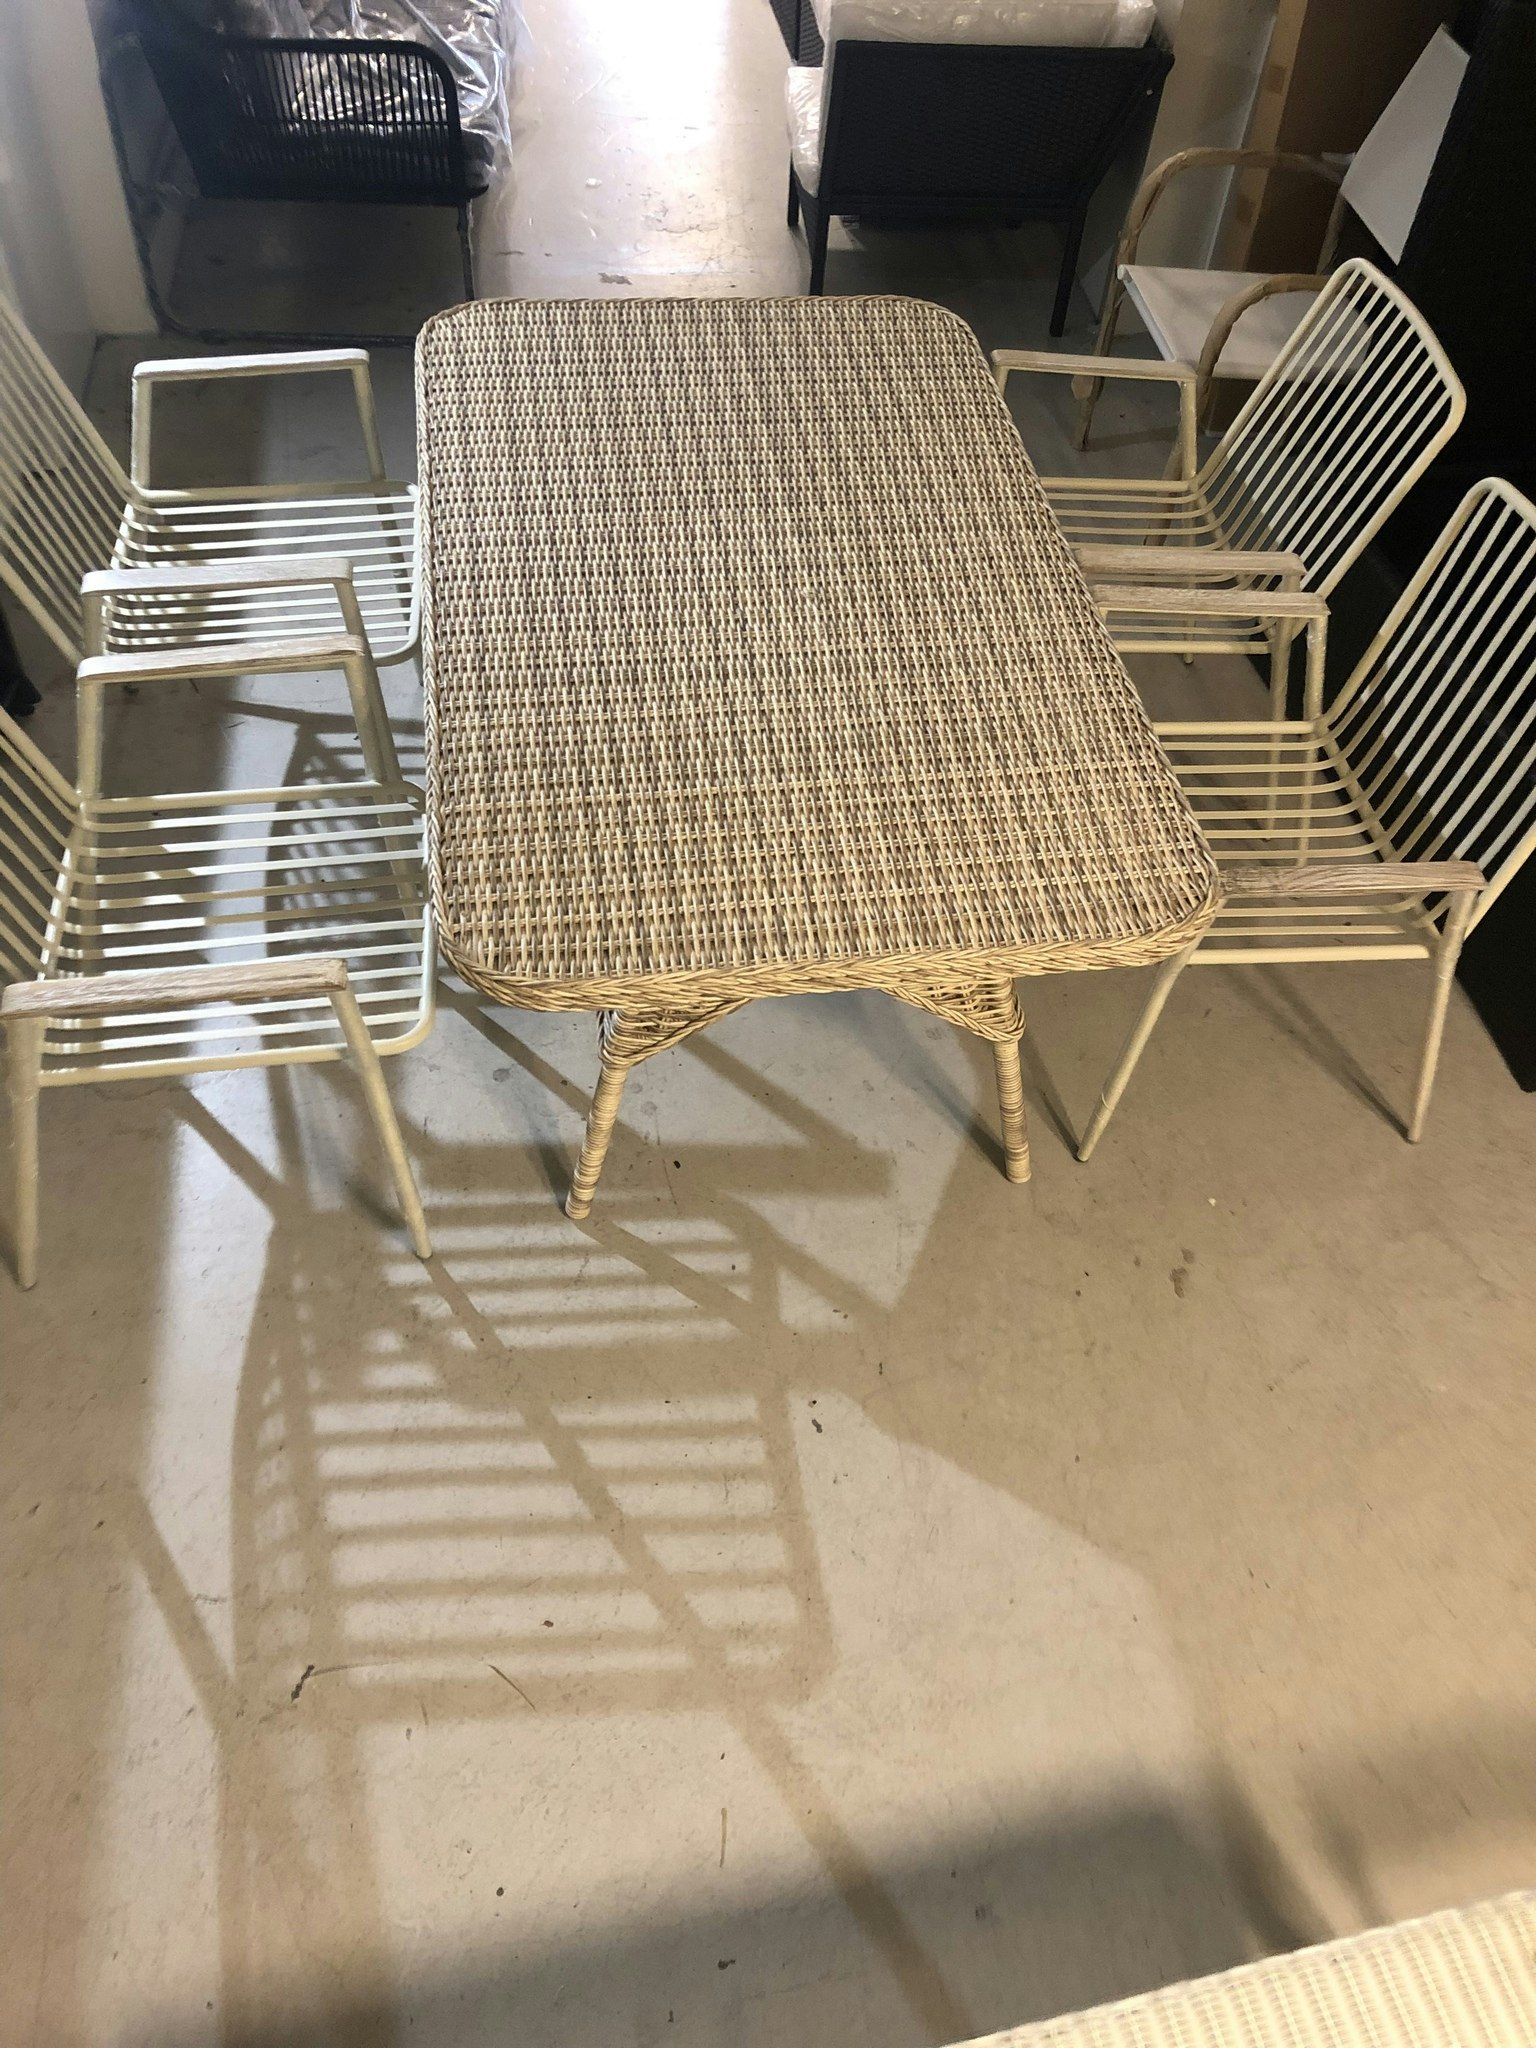 Brafab Evita bord inkl 4 aluminium stolar